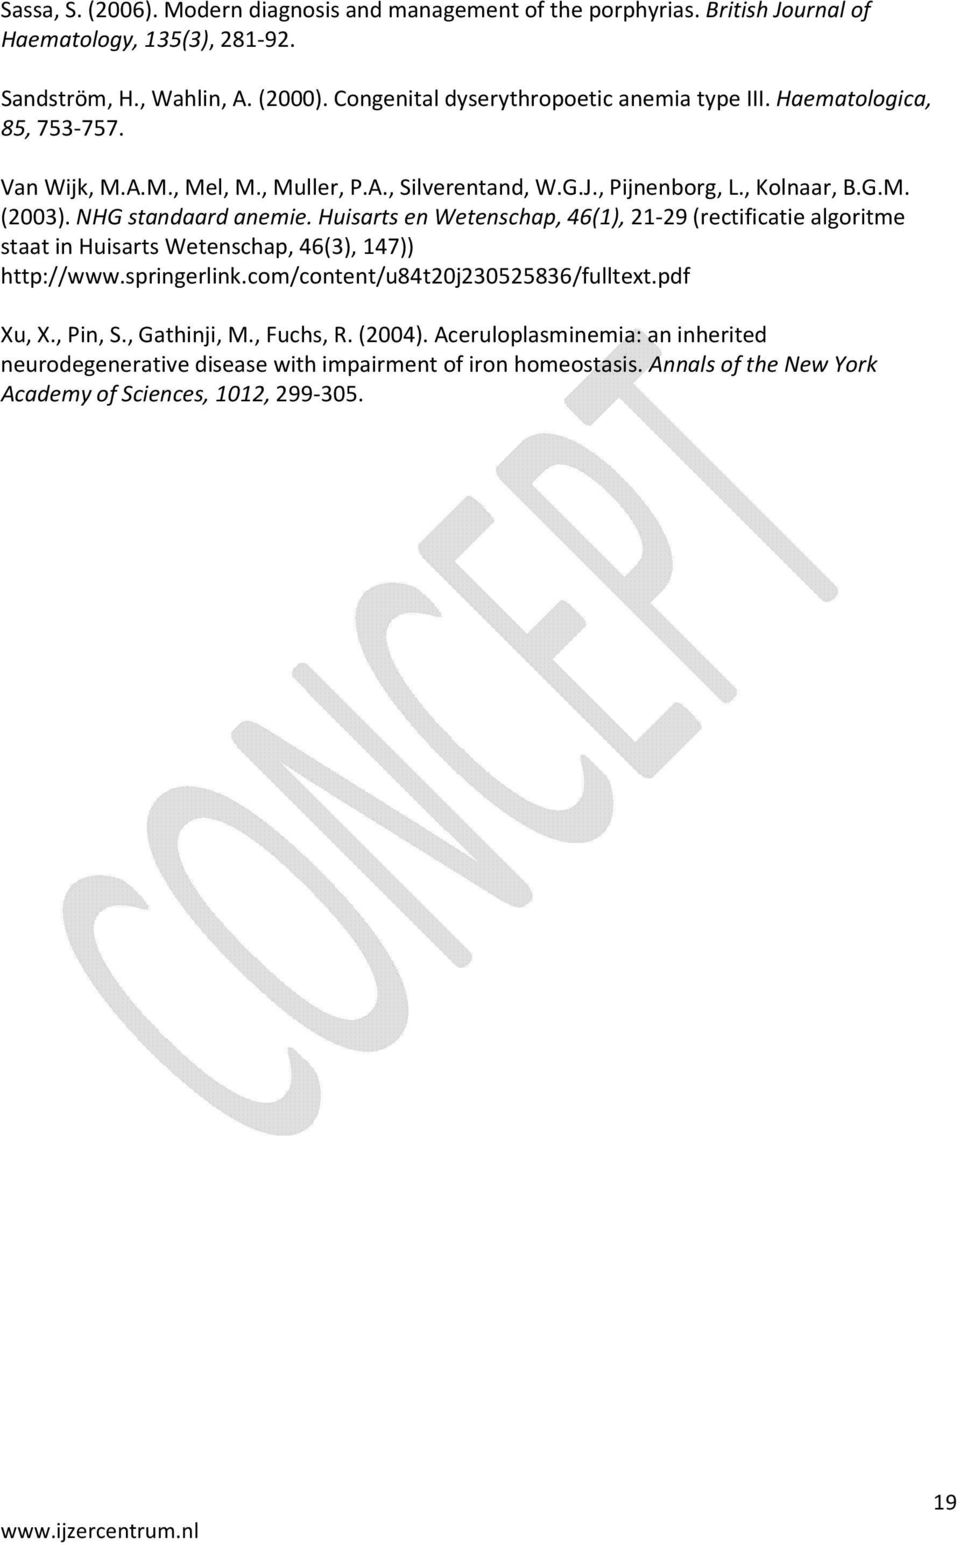 NHG standaard anemie. Huisarts en Wetenschap, 46(1), 21-29 (rectificatie algoritme staat in Huisarts Wetenschap, 46(3), 147)) http://www.springerlink.